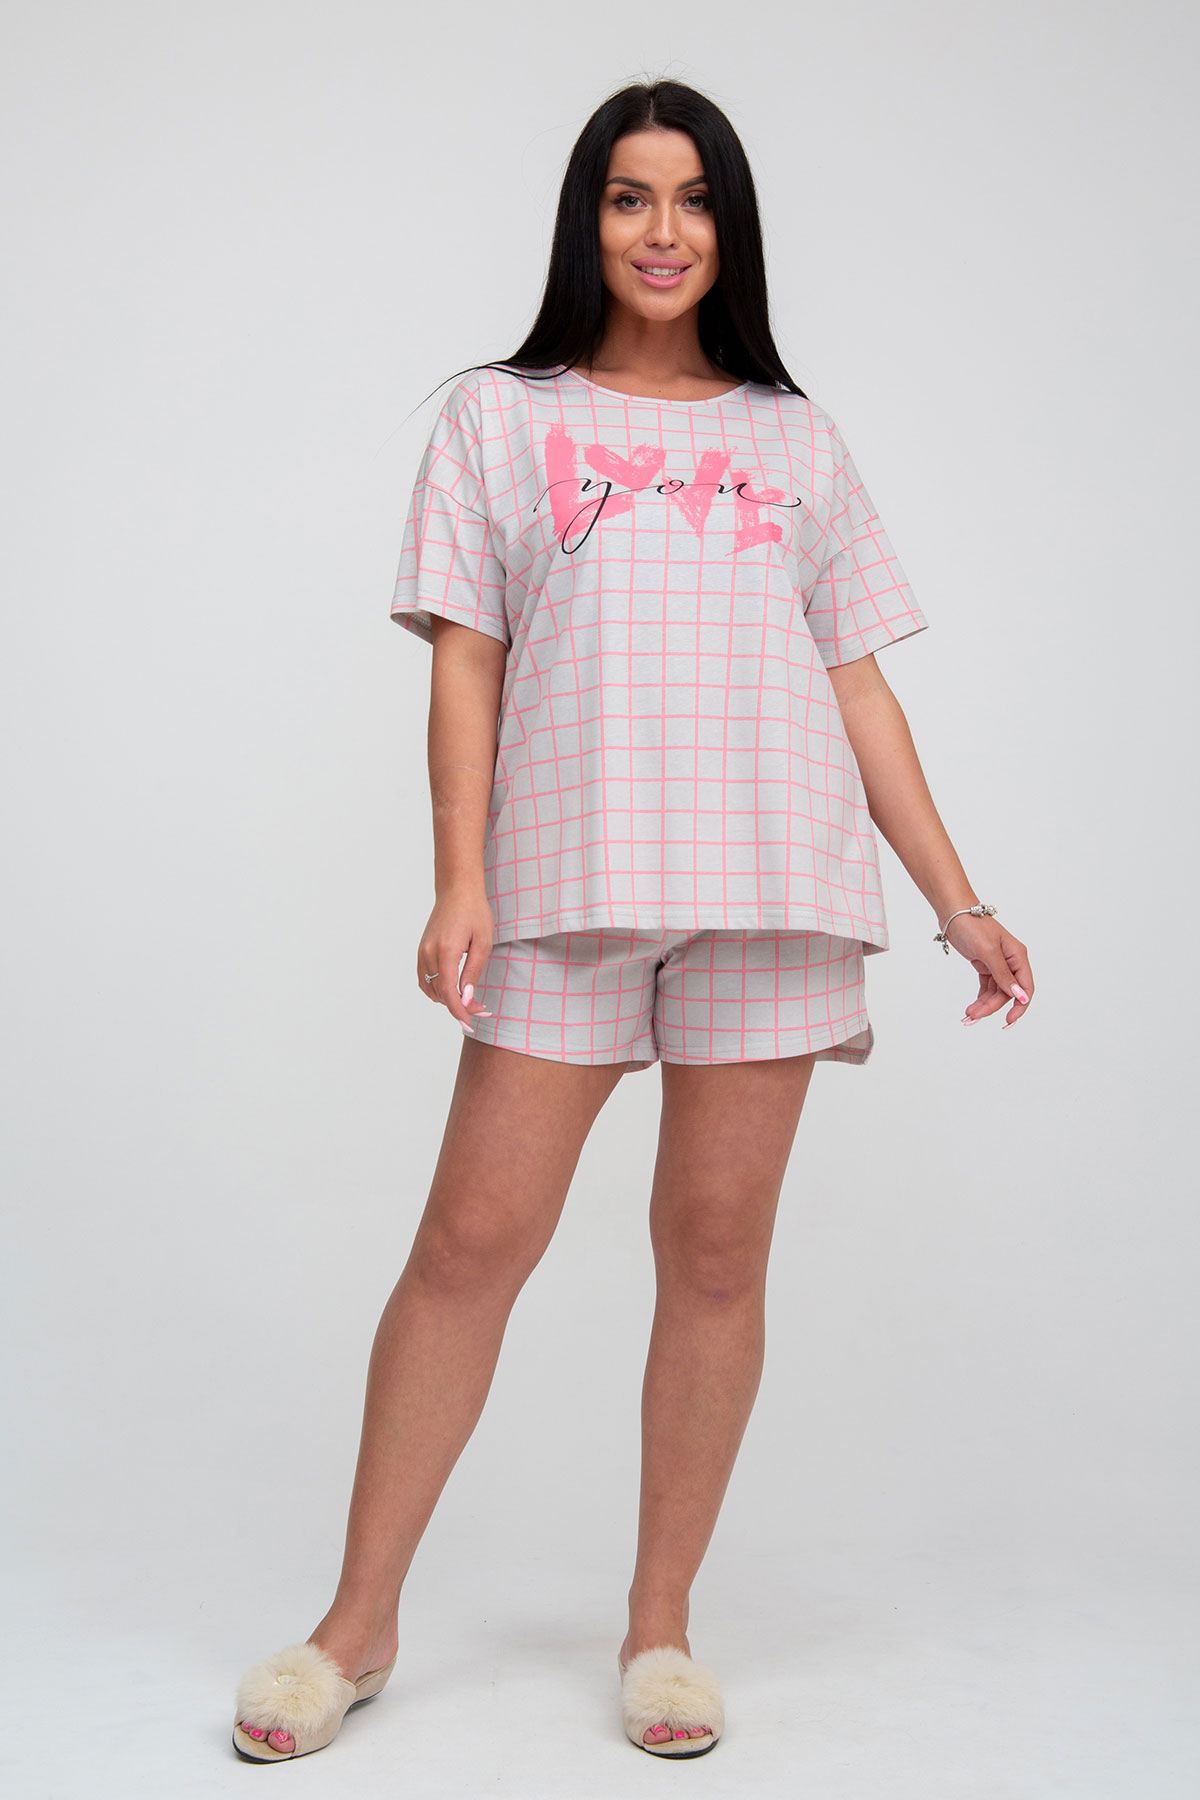 Жен. пижама с шортами арт. 23-0085 Серый р. 44